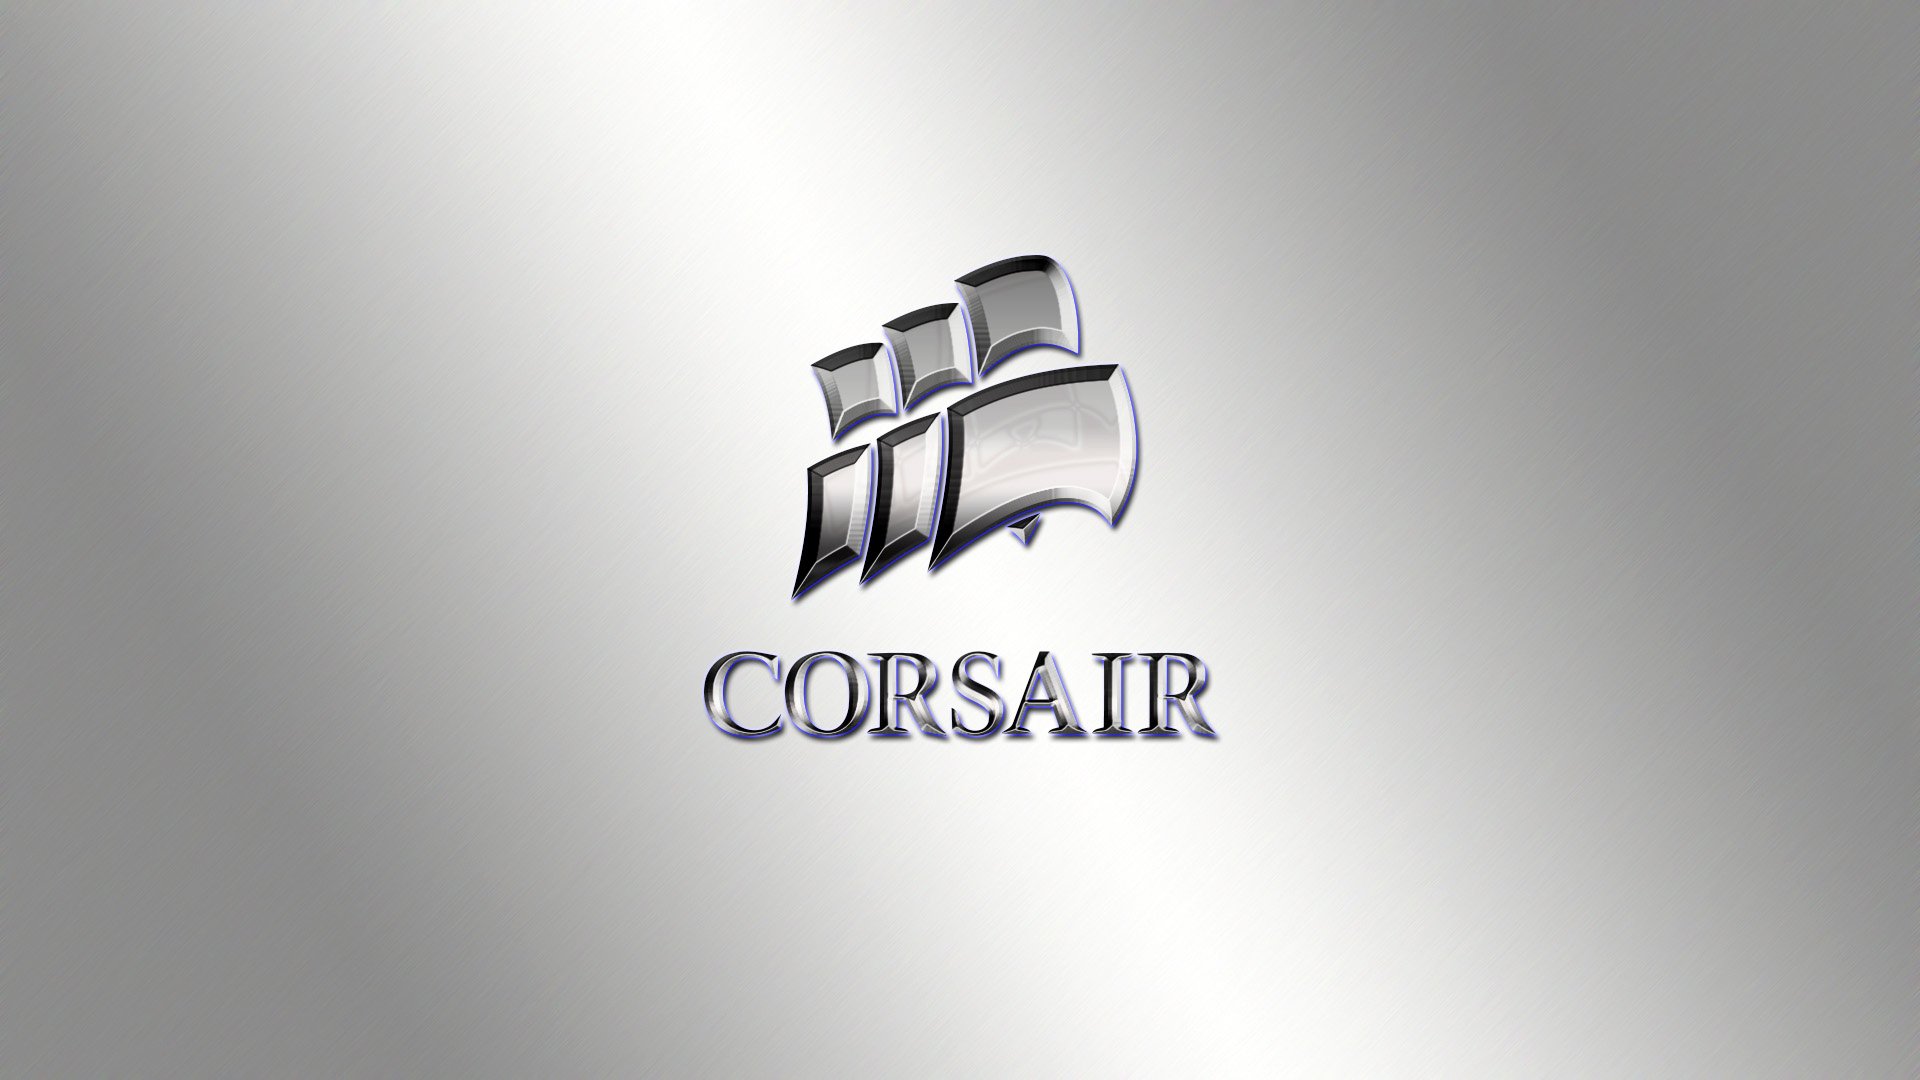 47+] Corsair Gaming Wallpaper - WallpaperSafari